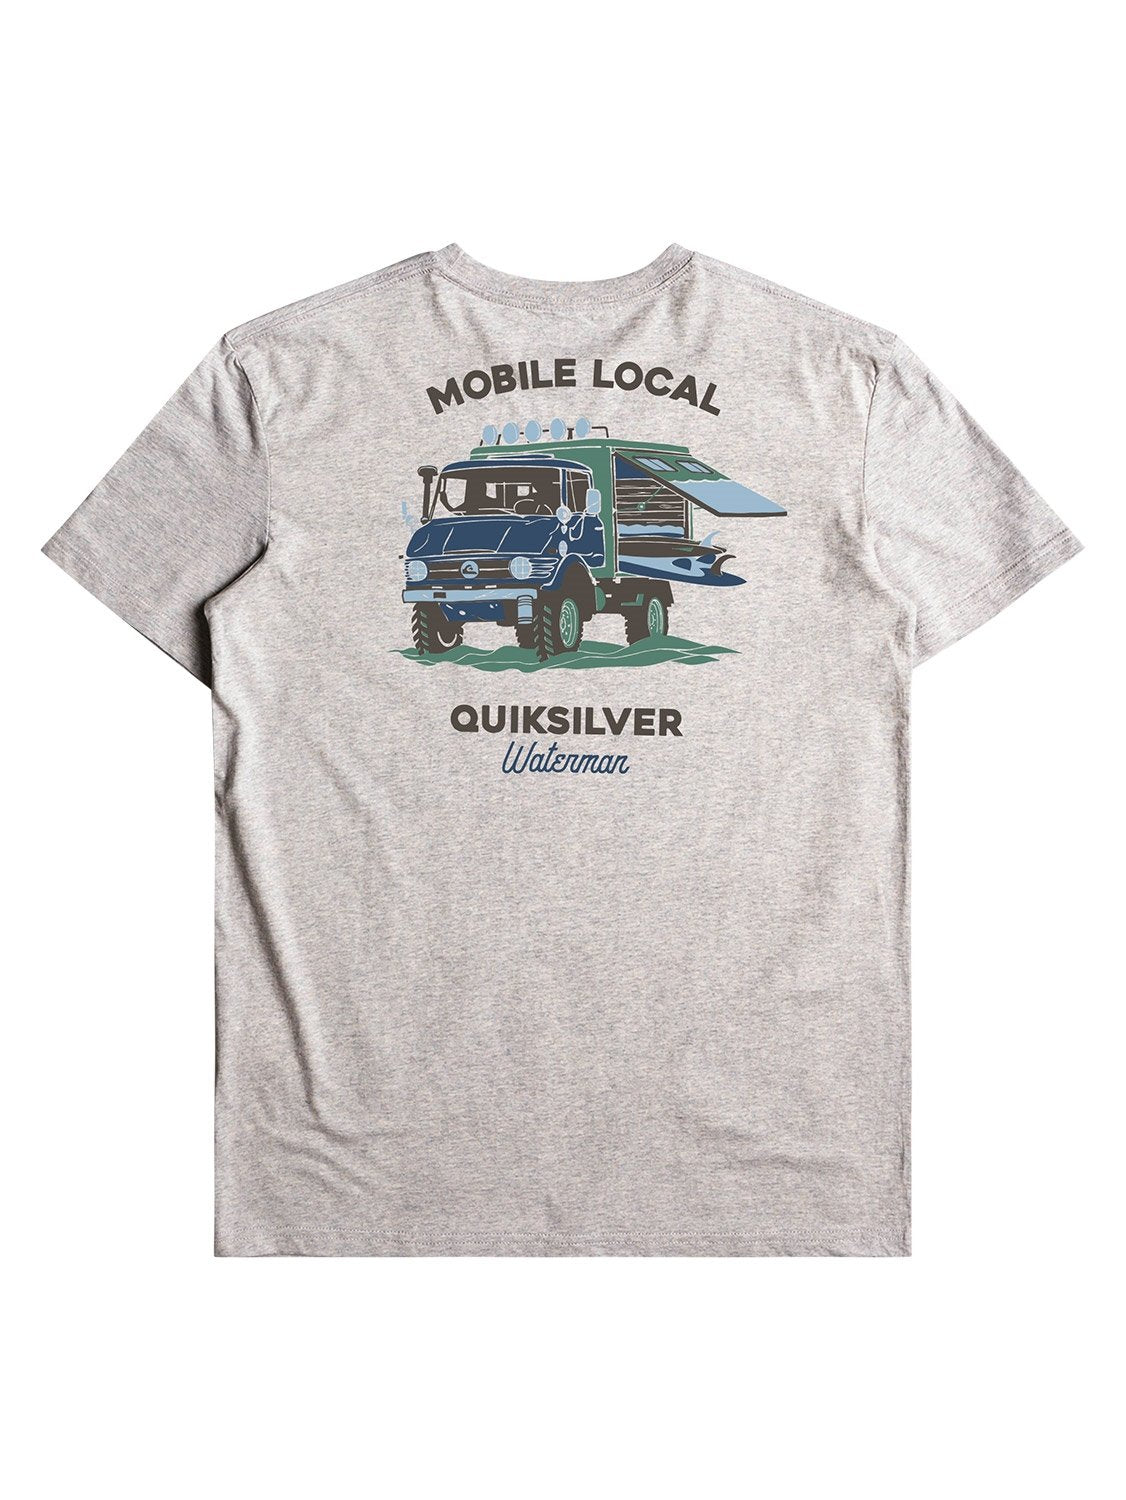 Quiksilver Men's Mobile Local T-Shirt